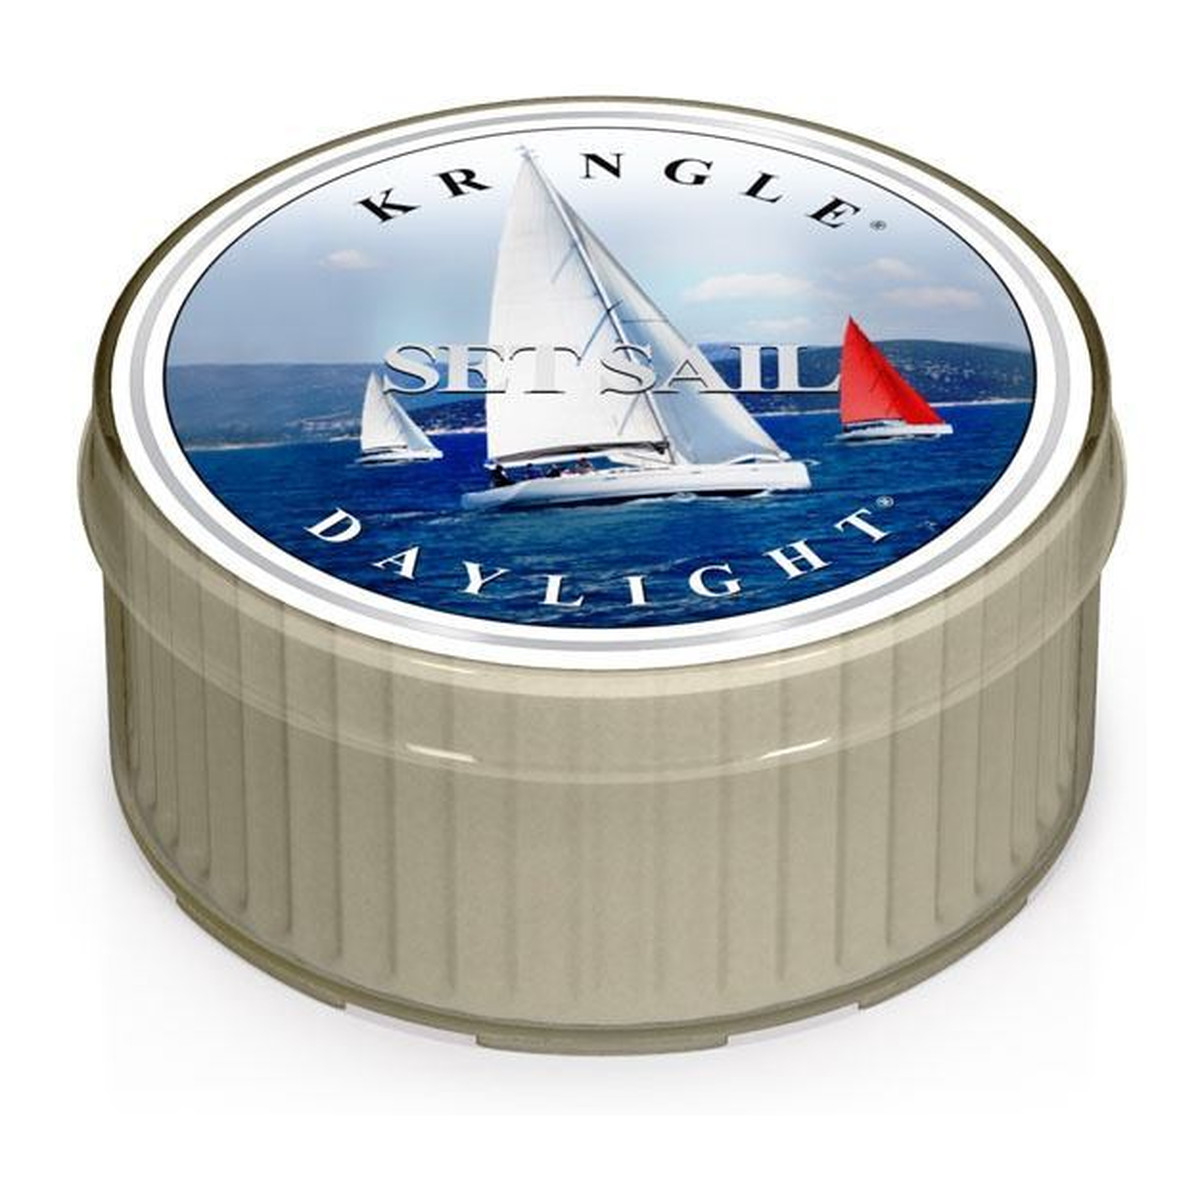 Kringle Candle Coloured Daylight Set Sail Świeczka Zapachowa Żagiel Na Morzu 52g